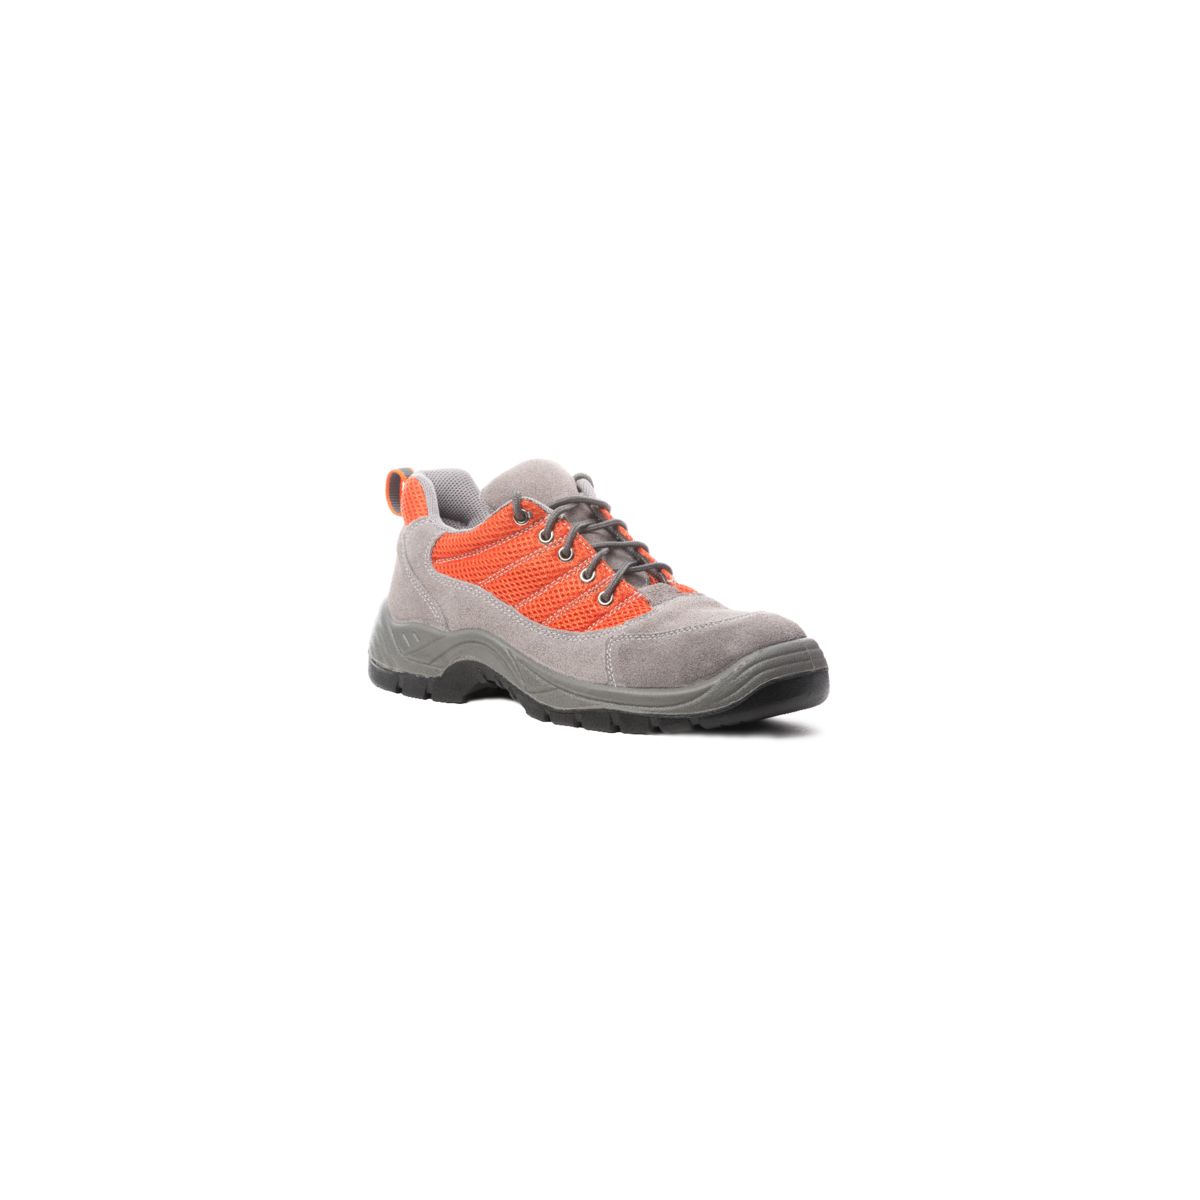 Chaussures de sécurité SPINELLE S1P basse orange - COVERGUARD - Taille 37 0